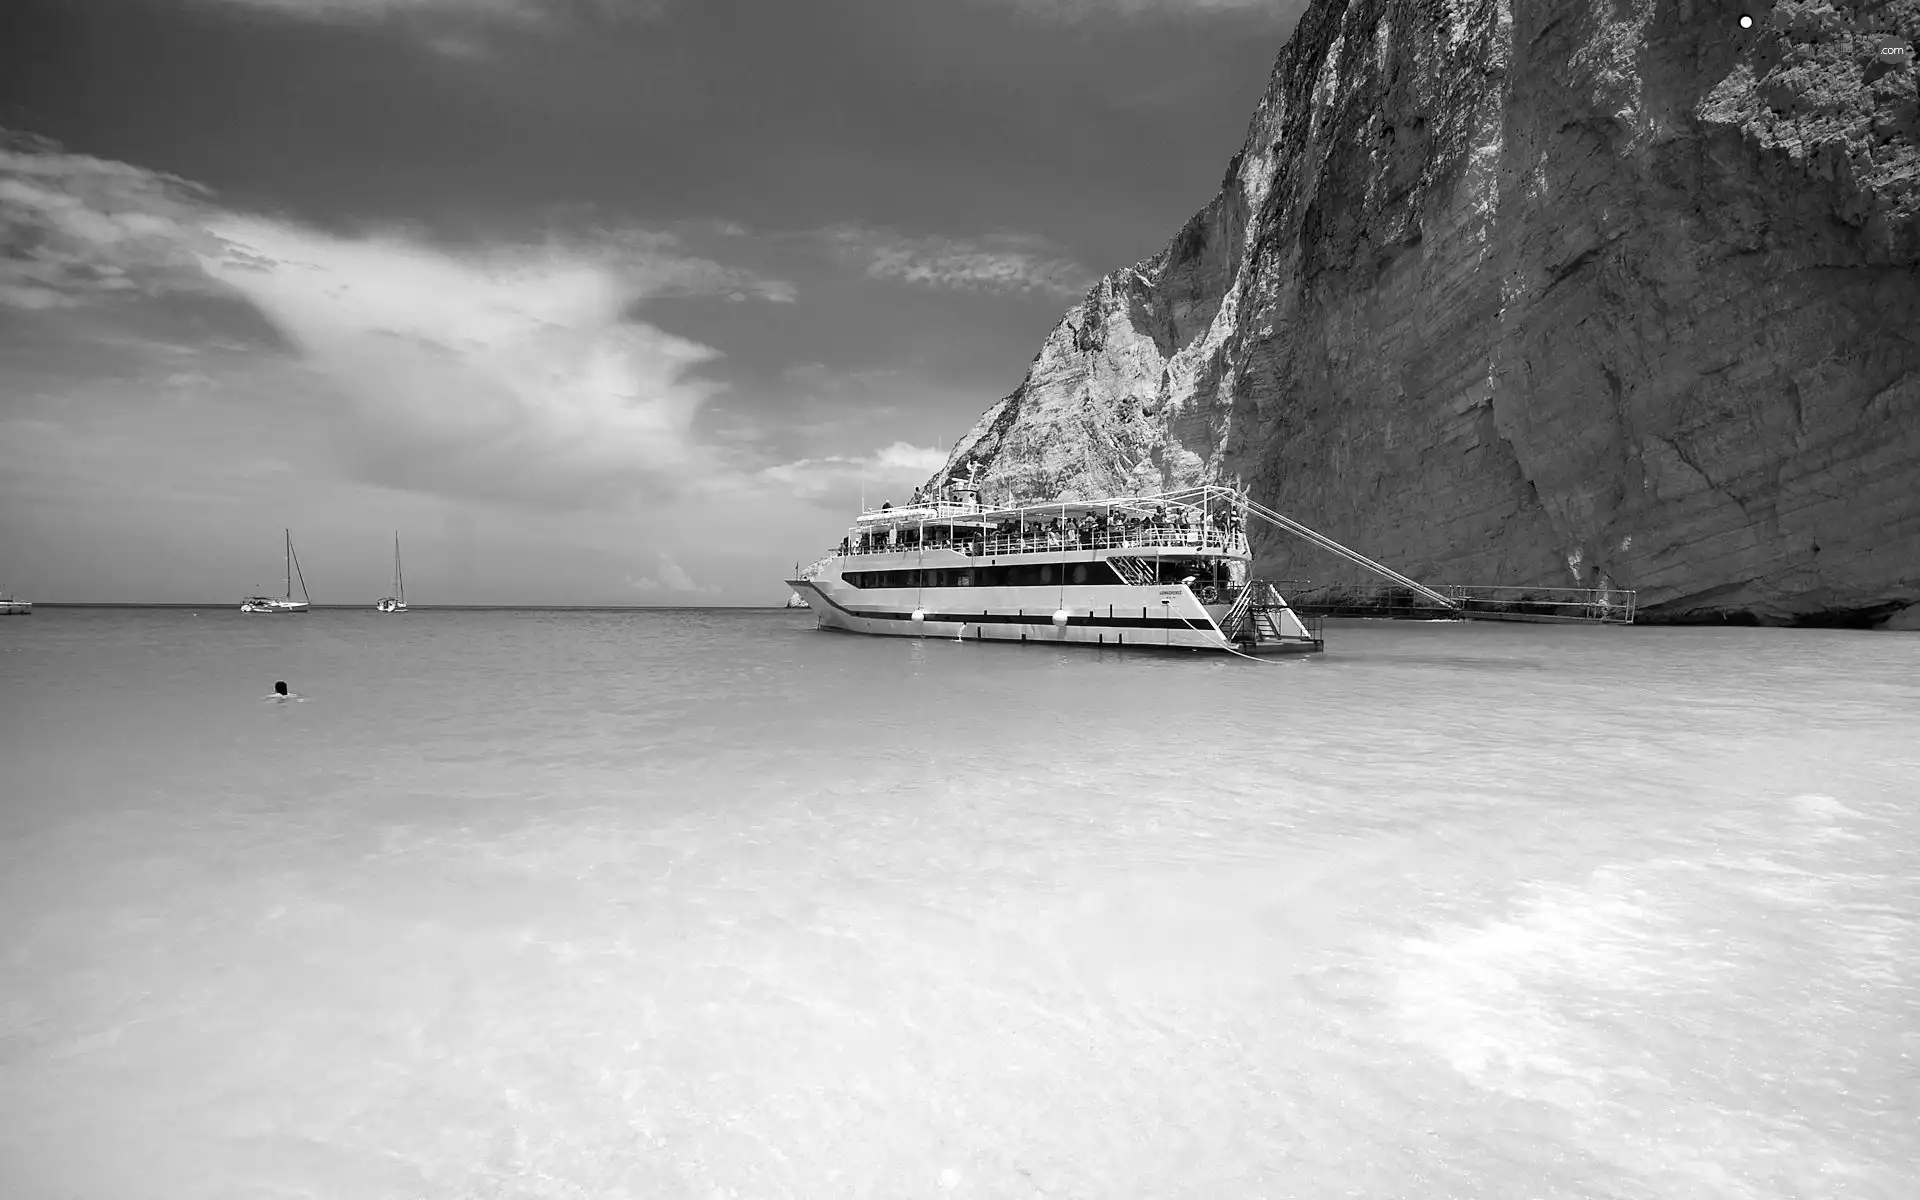 Greece, Ship, Yachts, wreck Bay